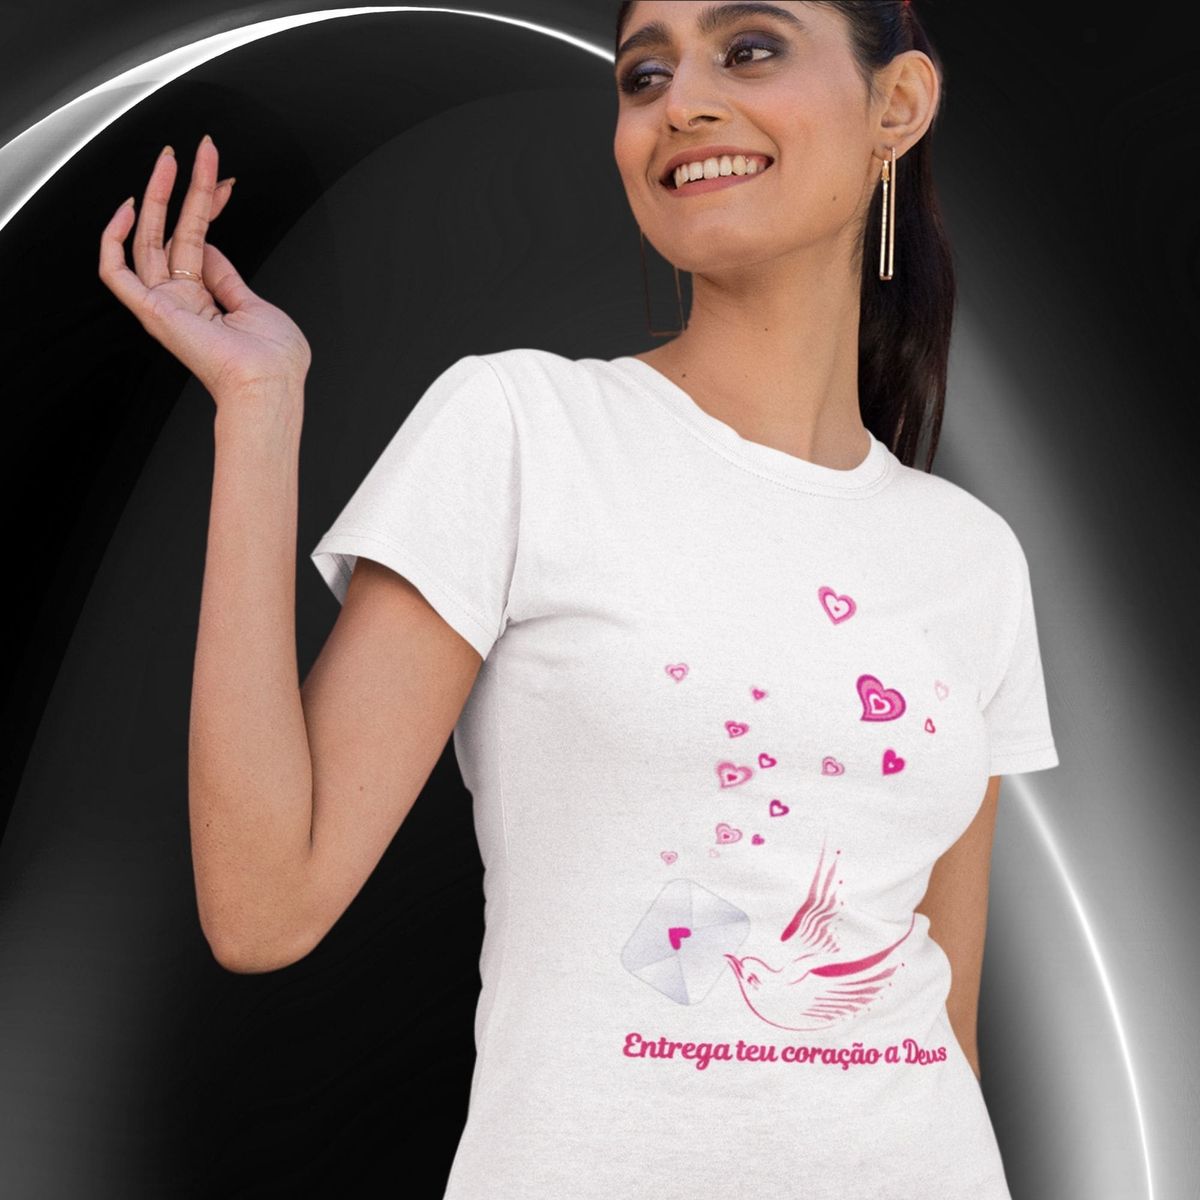 Nome do produto: Camiseta Feminina Baby Long Entrega Teu Coração A Deus